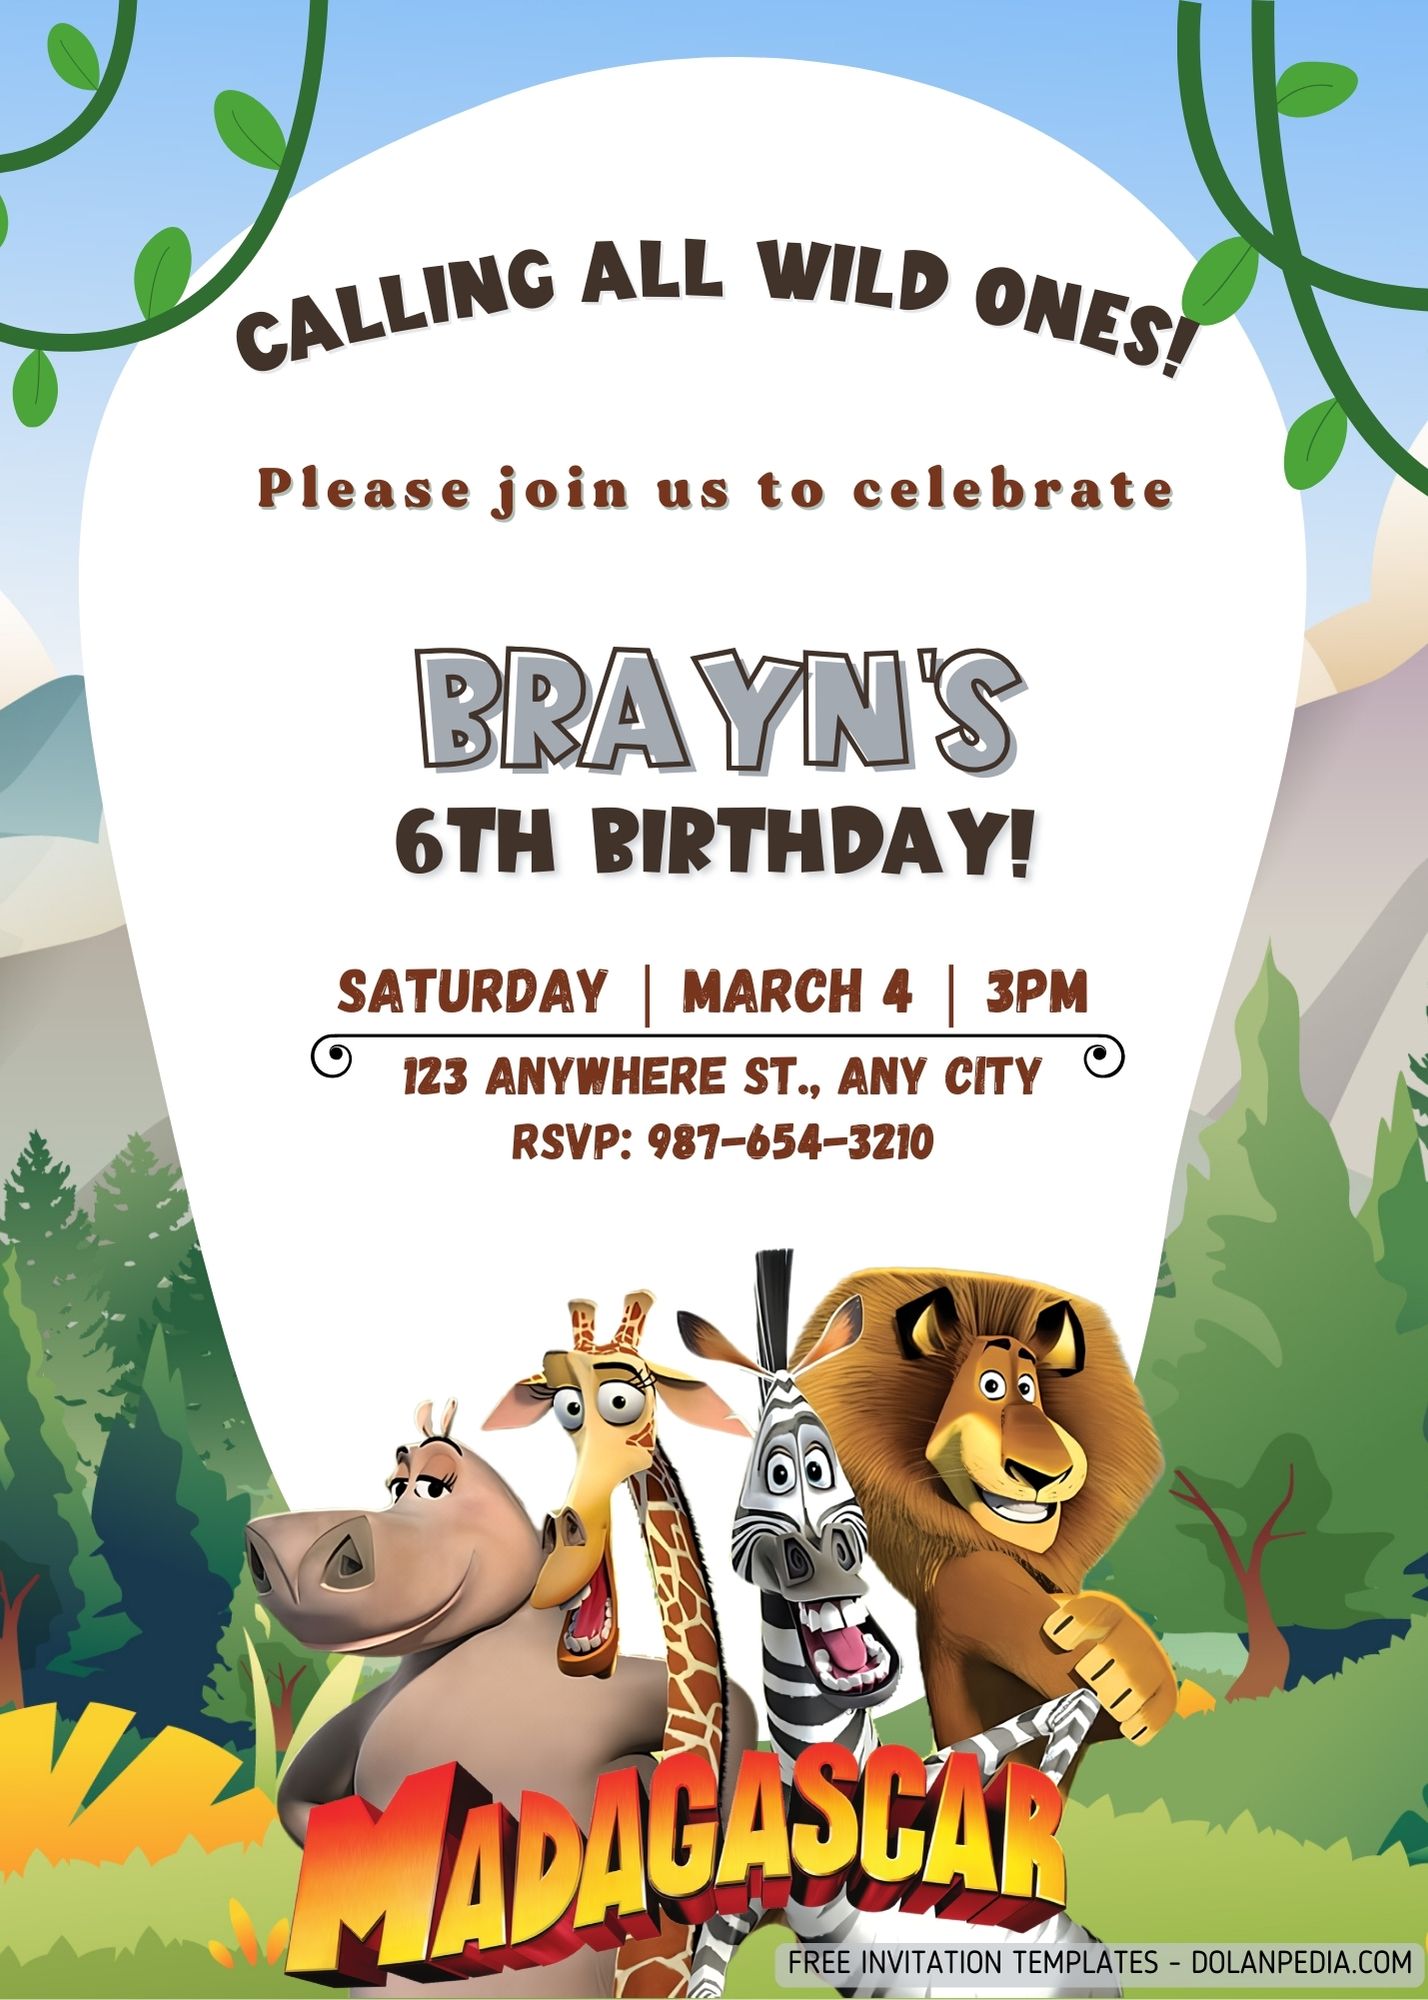 FREE Madagascar Safari Theme Invitation Templates